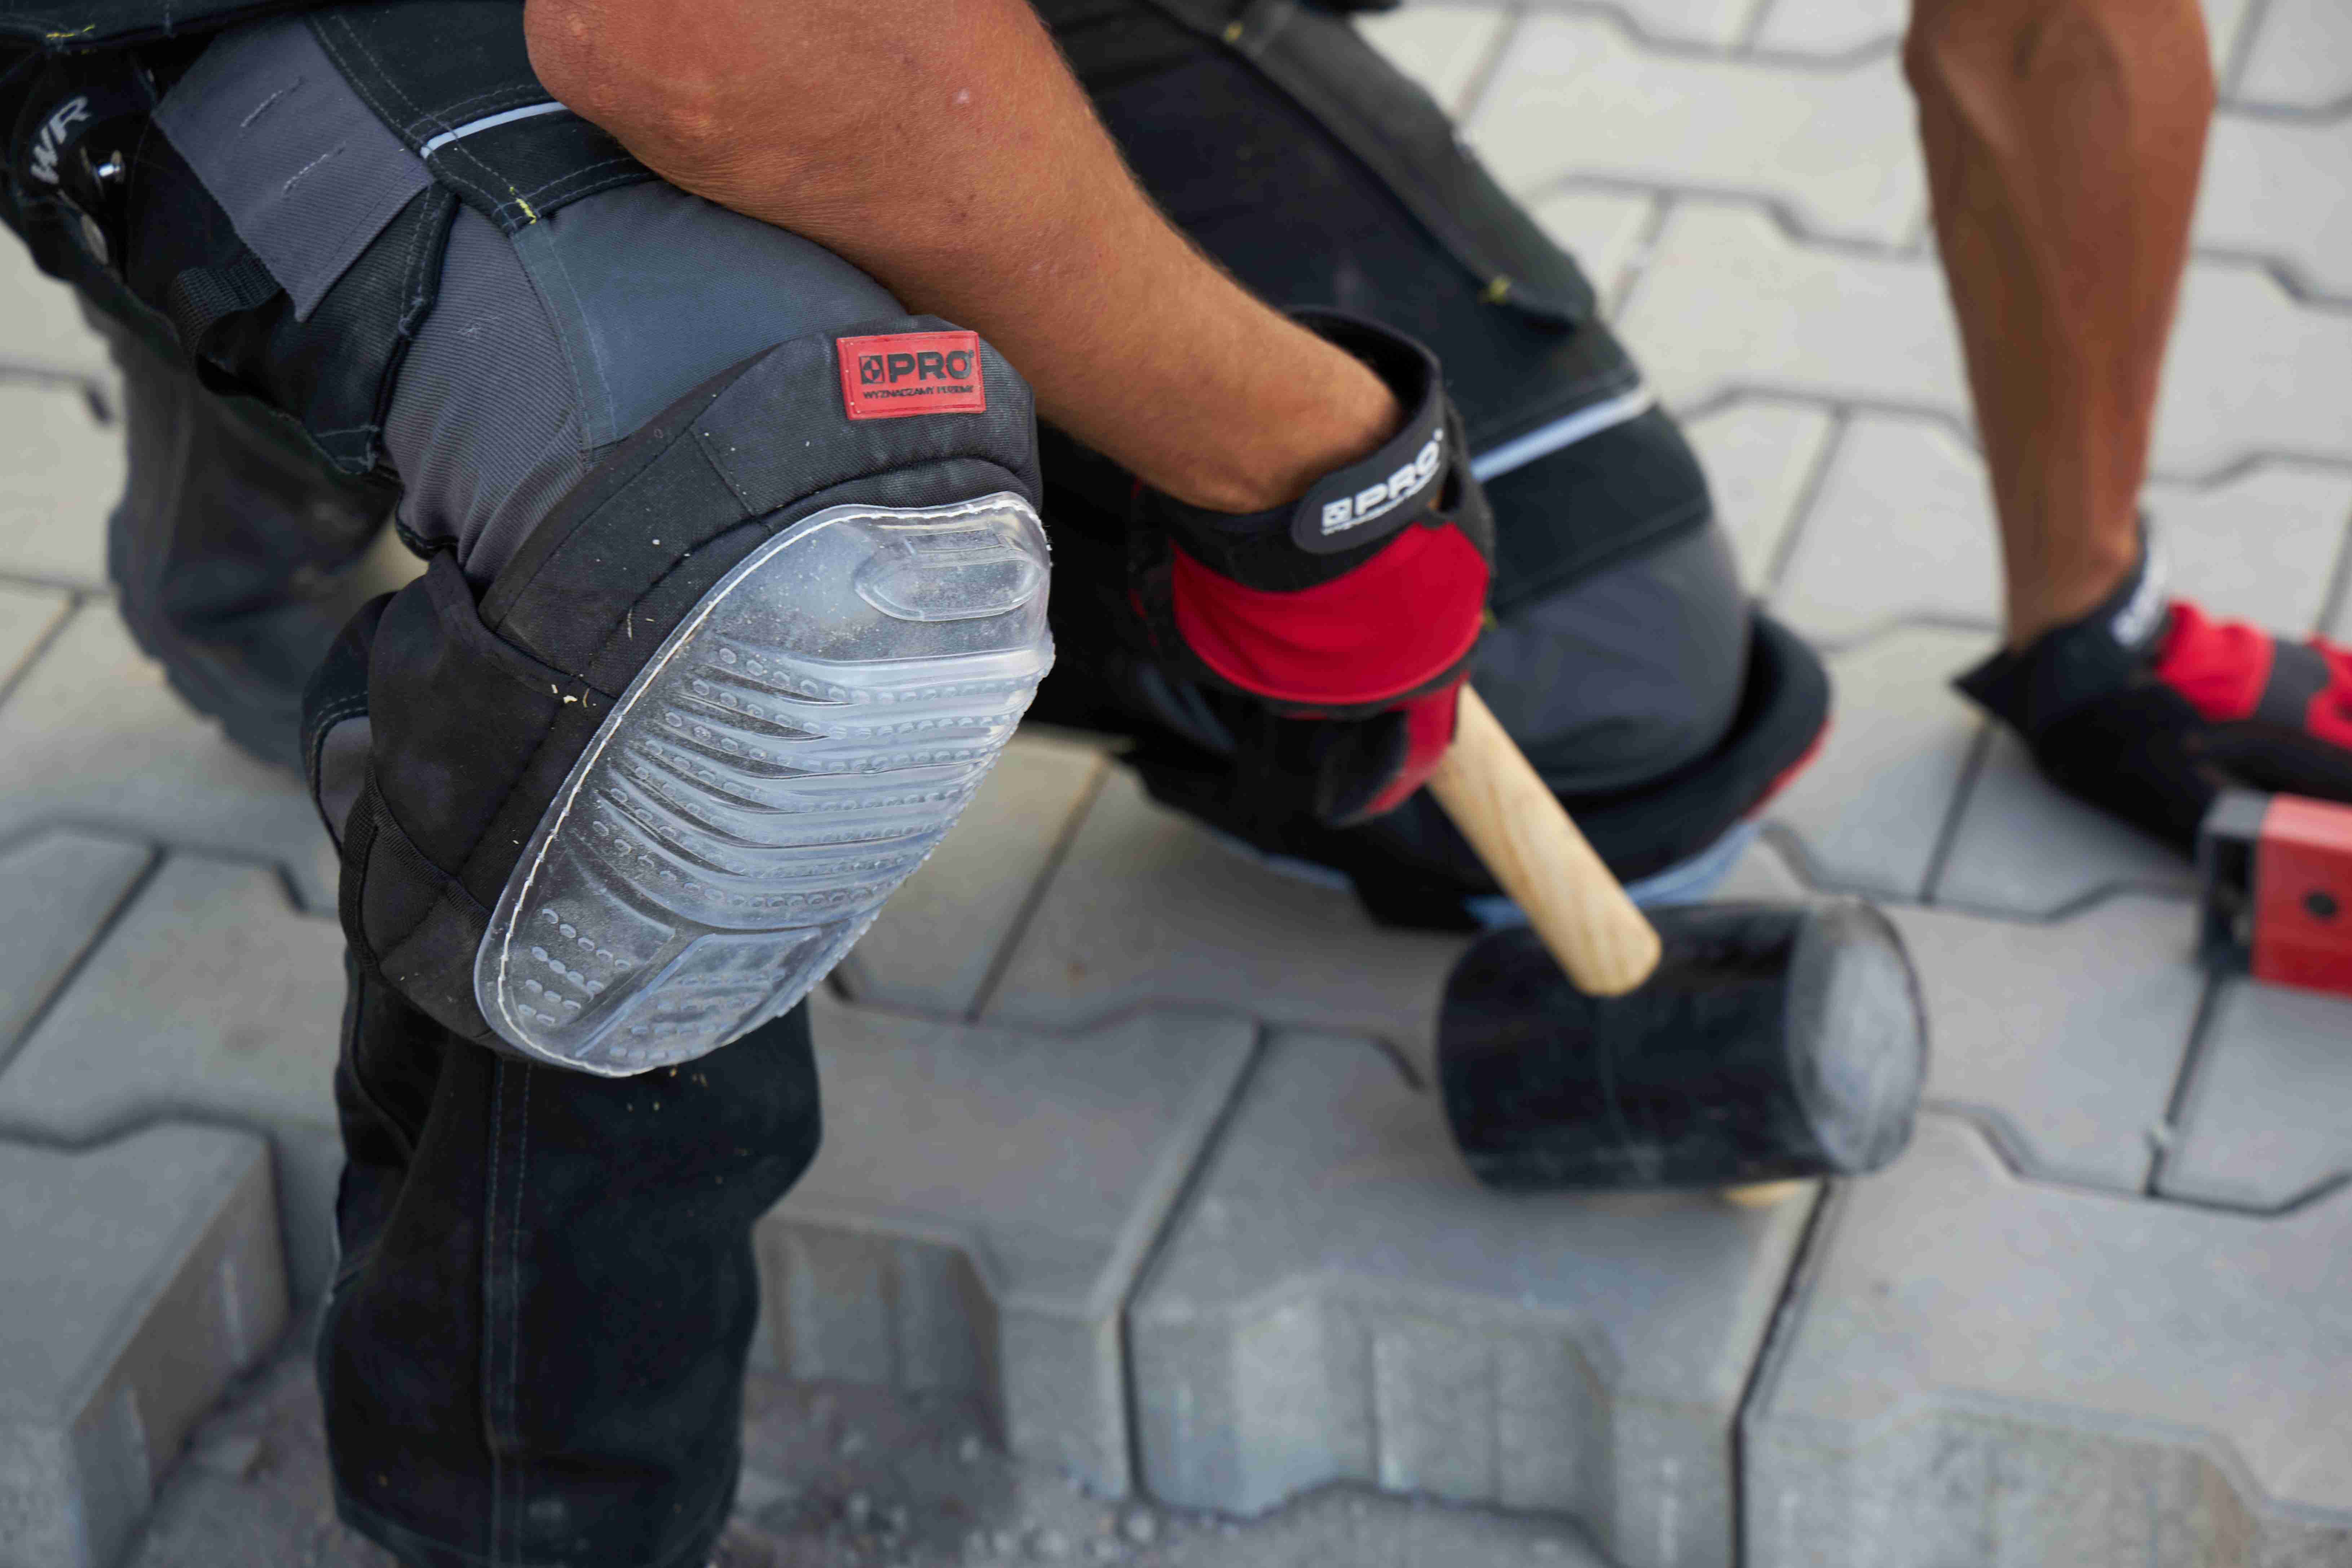 Nakolanniki żelowe PRO zapewniają odpowiednią ochronę kolan podczas pracy.